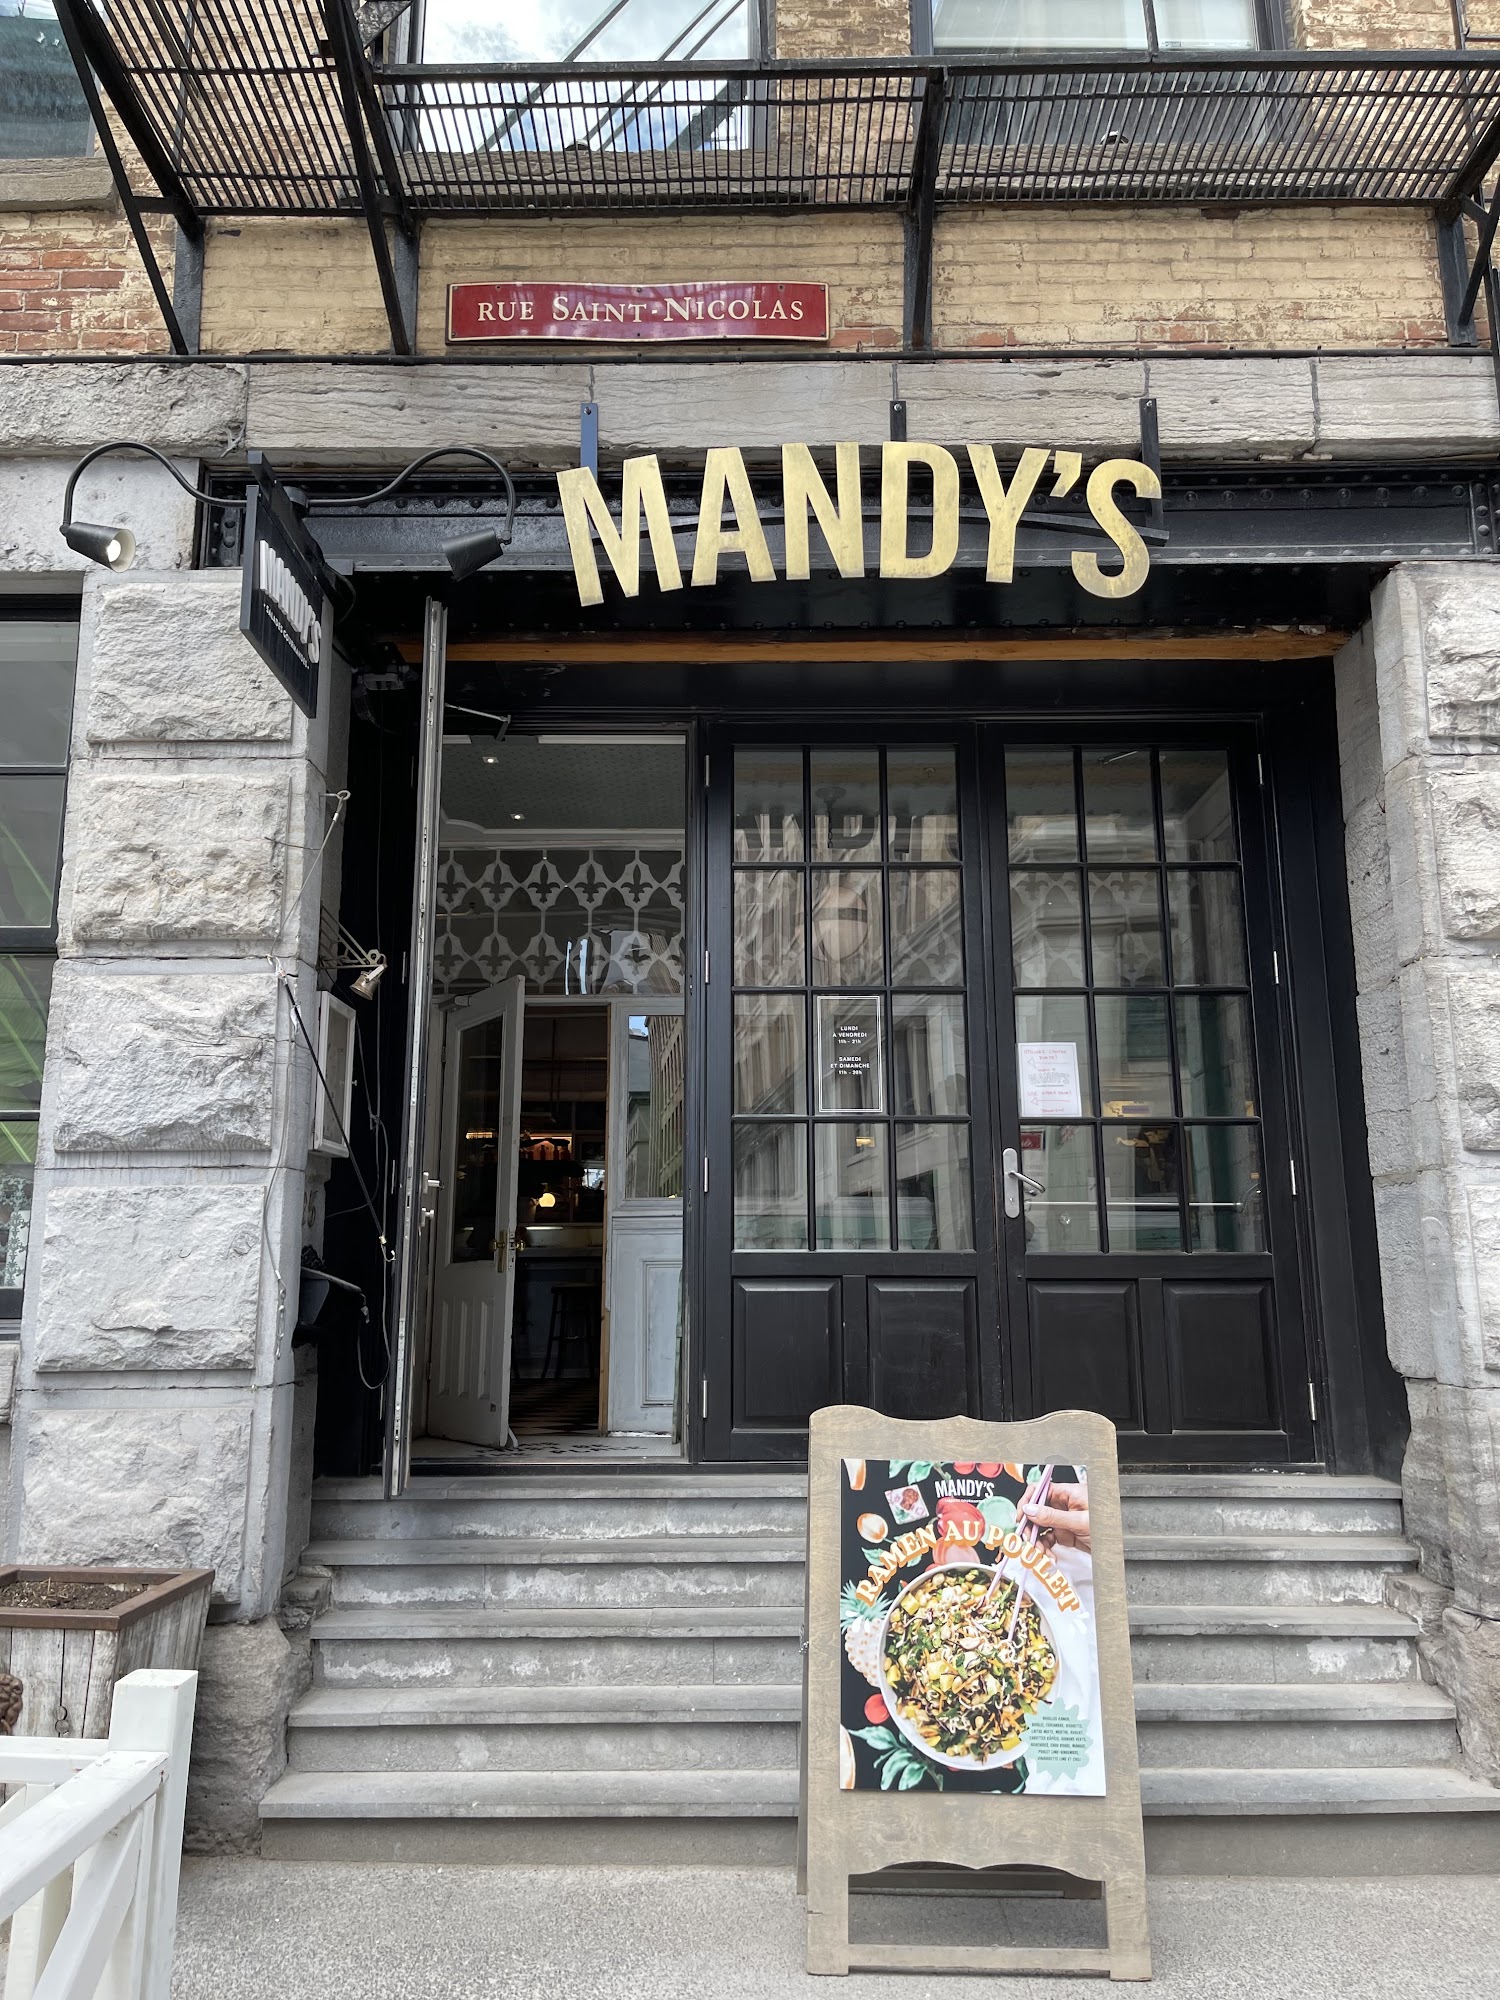 Mandy's